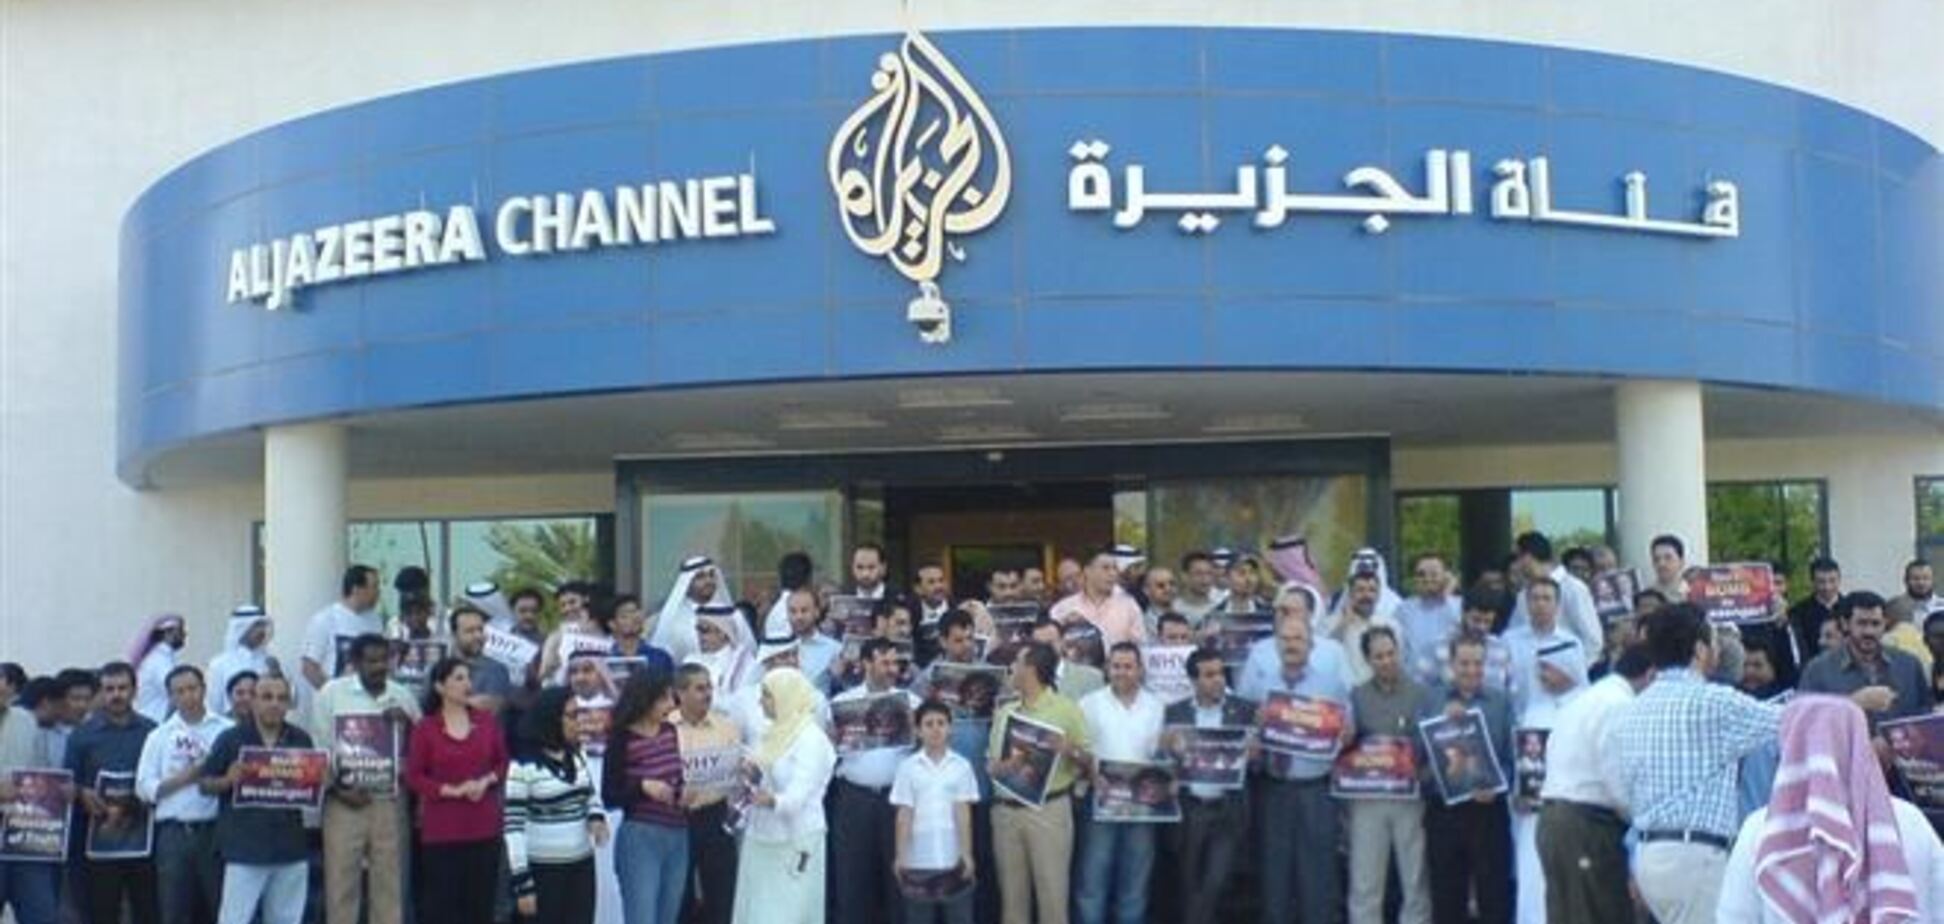 Канал 'Аль-Джазира' требует освобождения своих журналистов в Египте